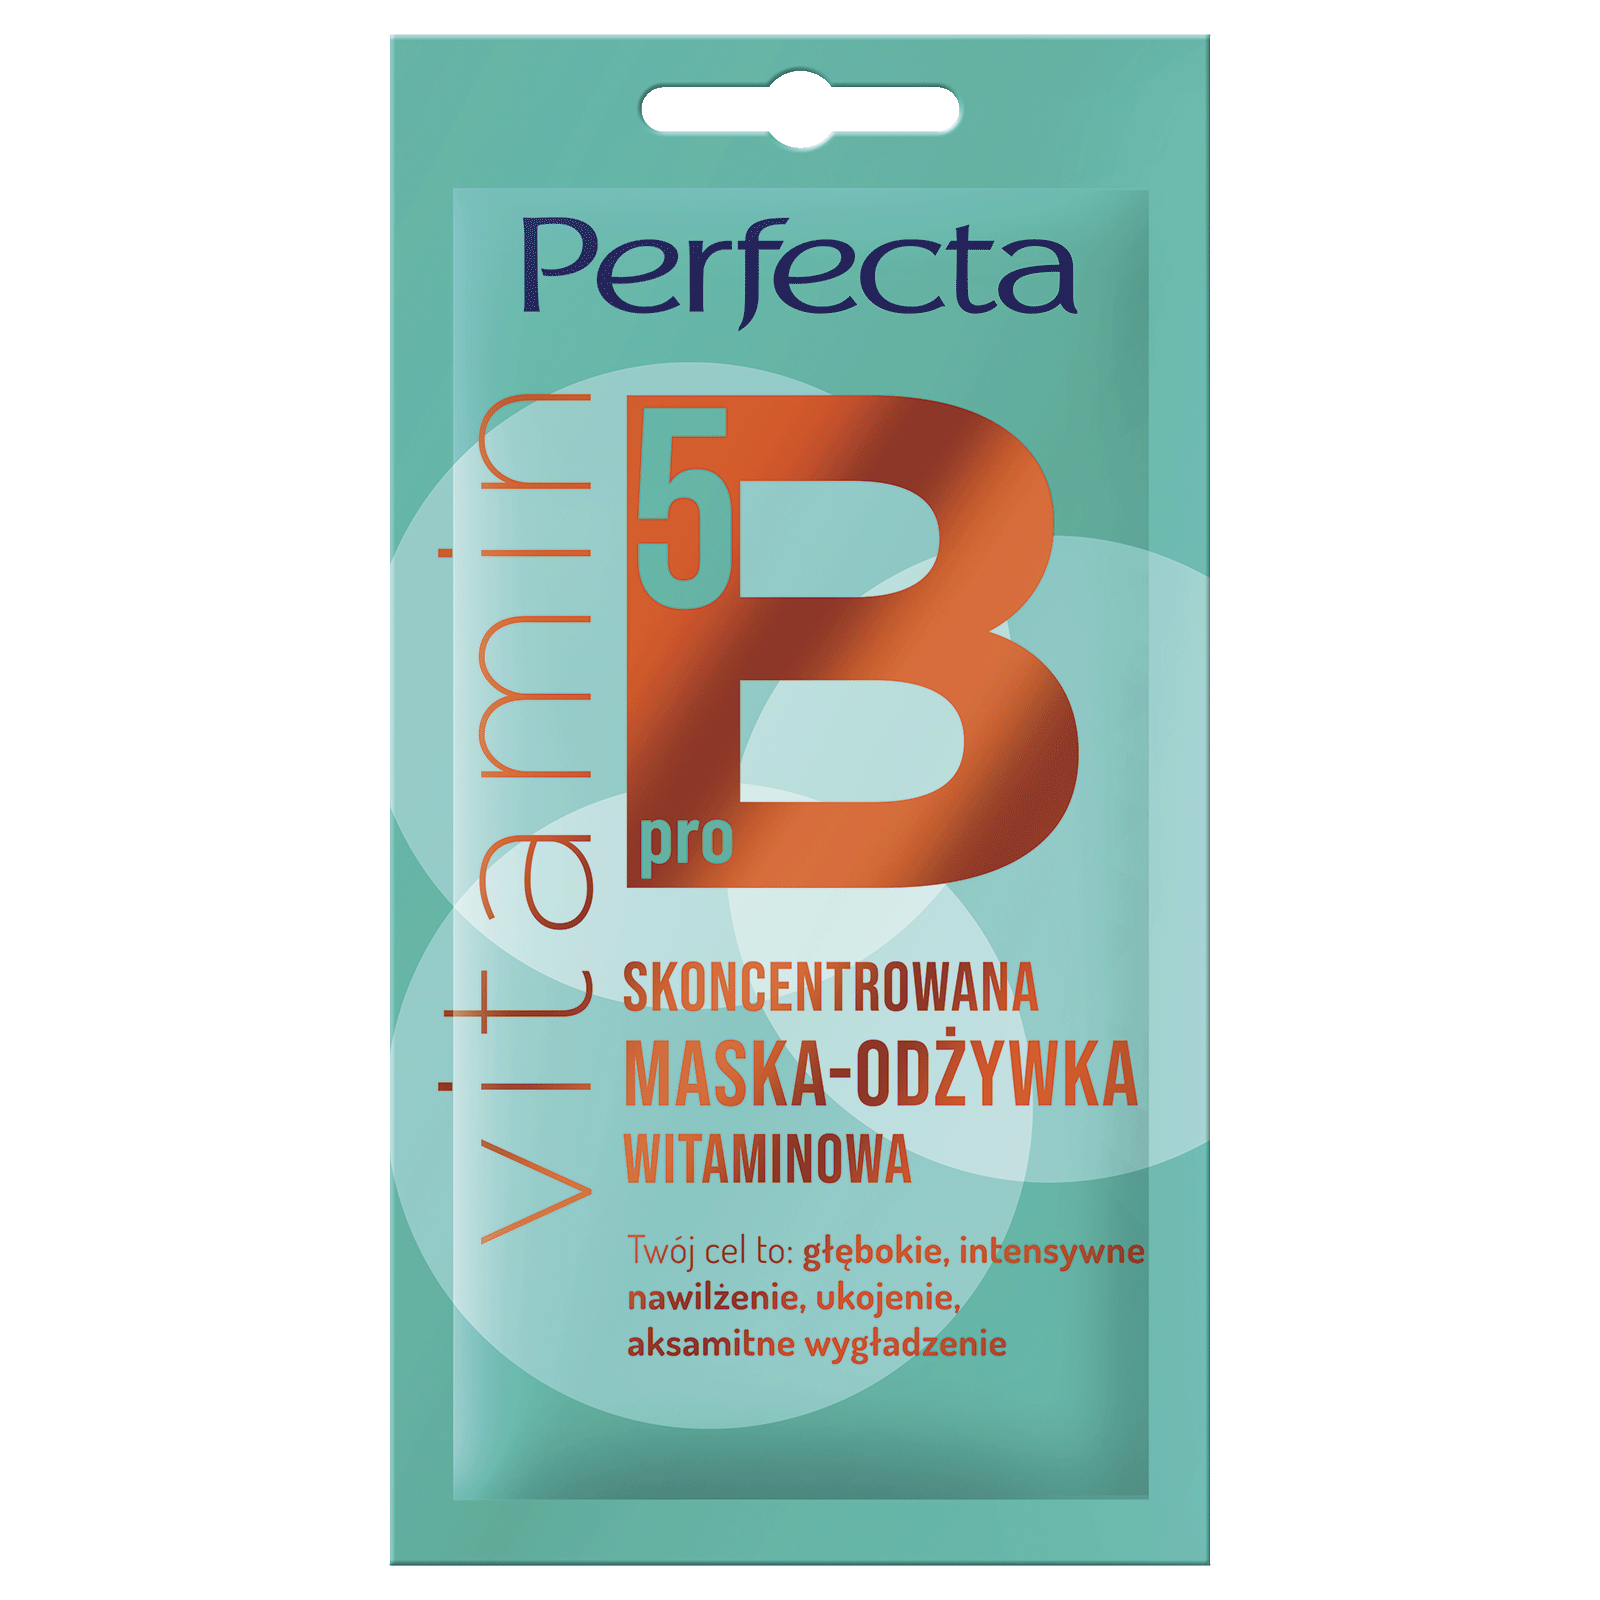 Концентрированная витаминная маска-ополаскиватель для лица Perfecta Beauty Vitamin Prob5, 8 мл